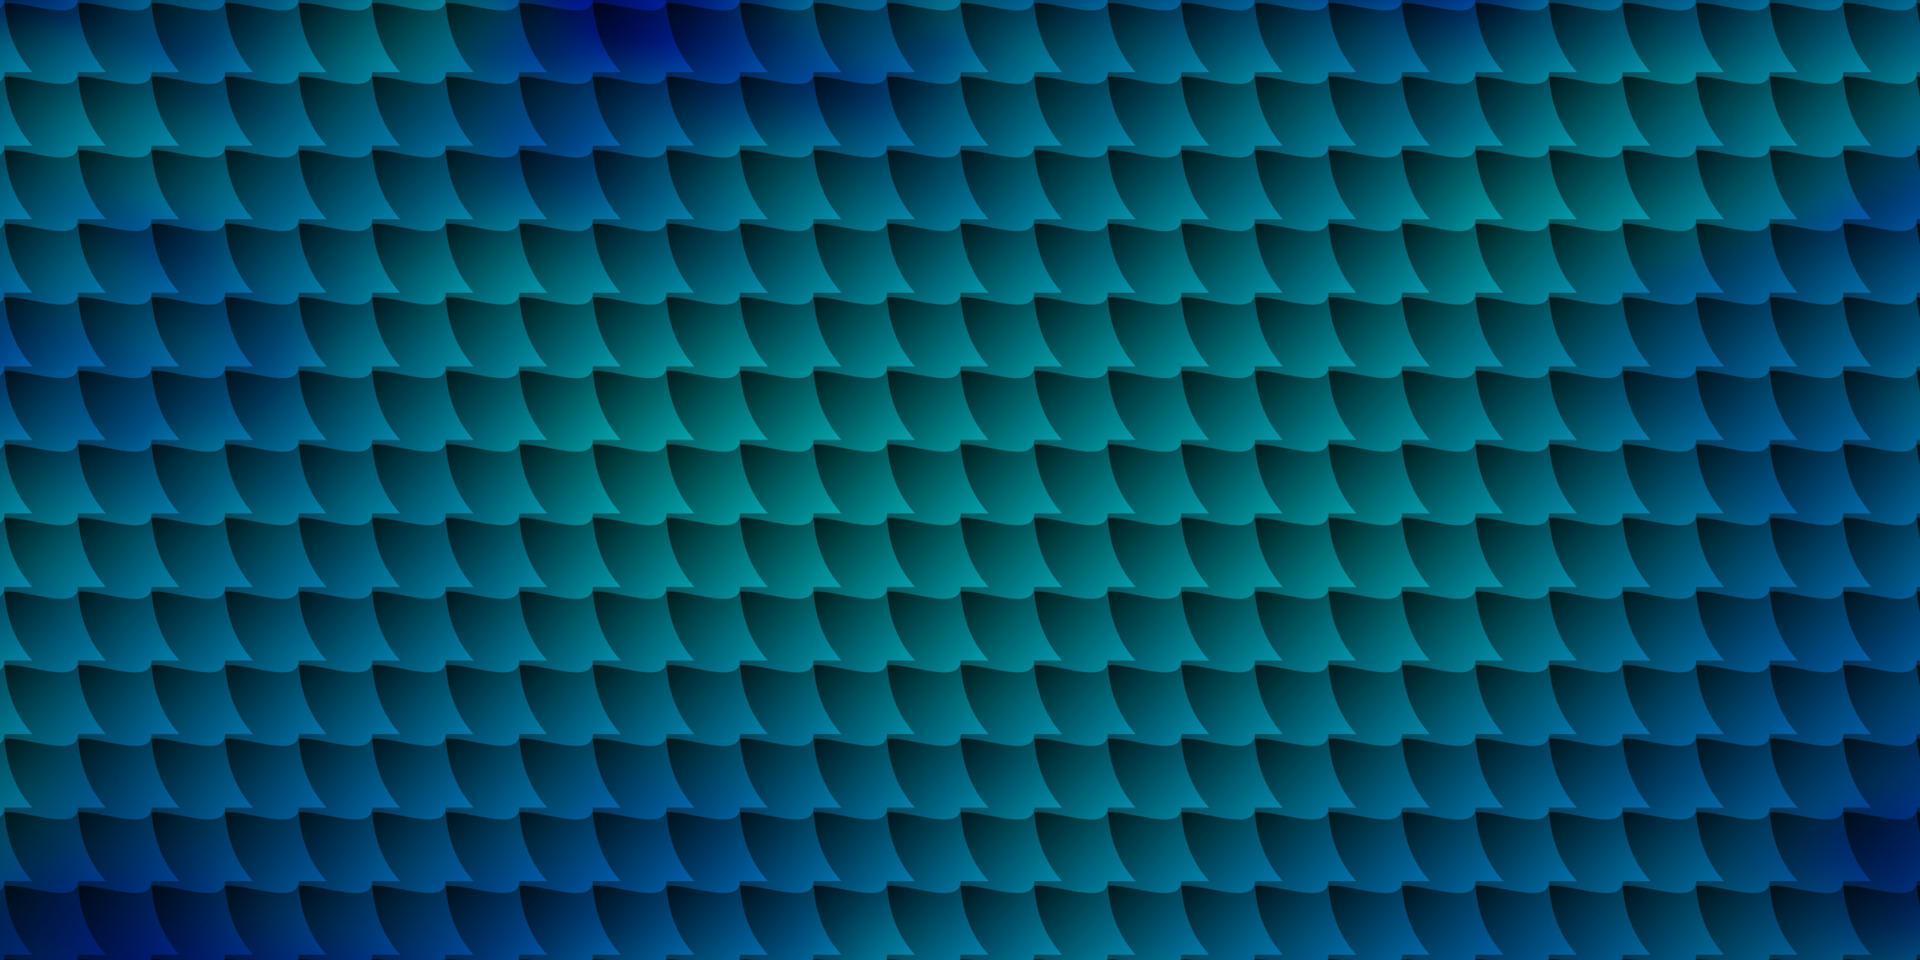 textura de vector azul oscuro en estilo rectangular.